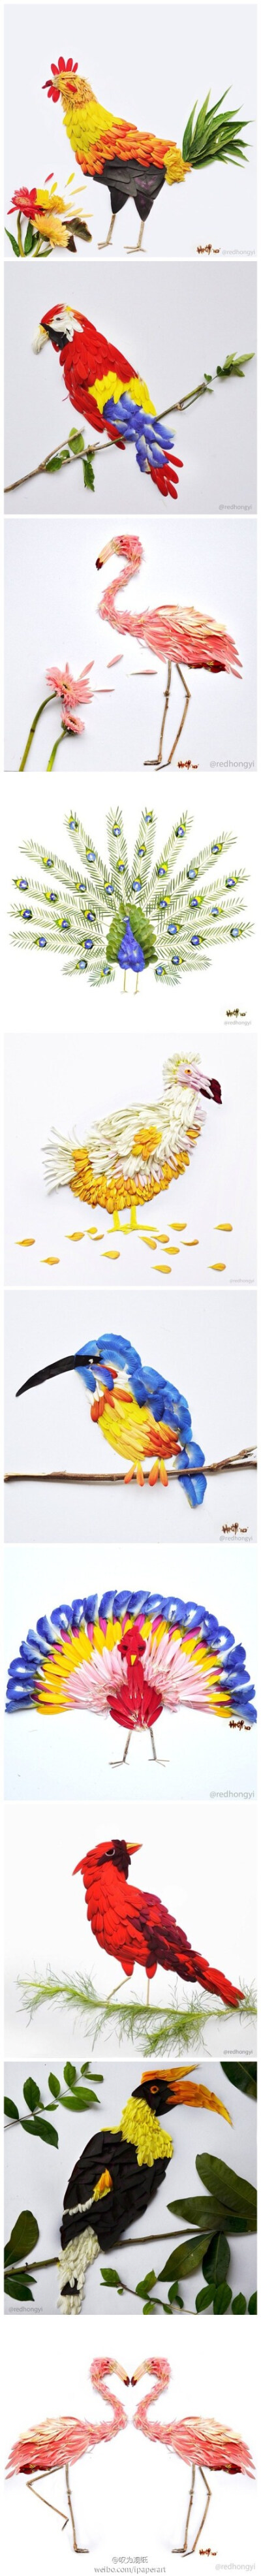 设计师Hong Yi的作品，用鲜花拼成的鸟兽，有不同于羽毛的鲜亮色泽。